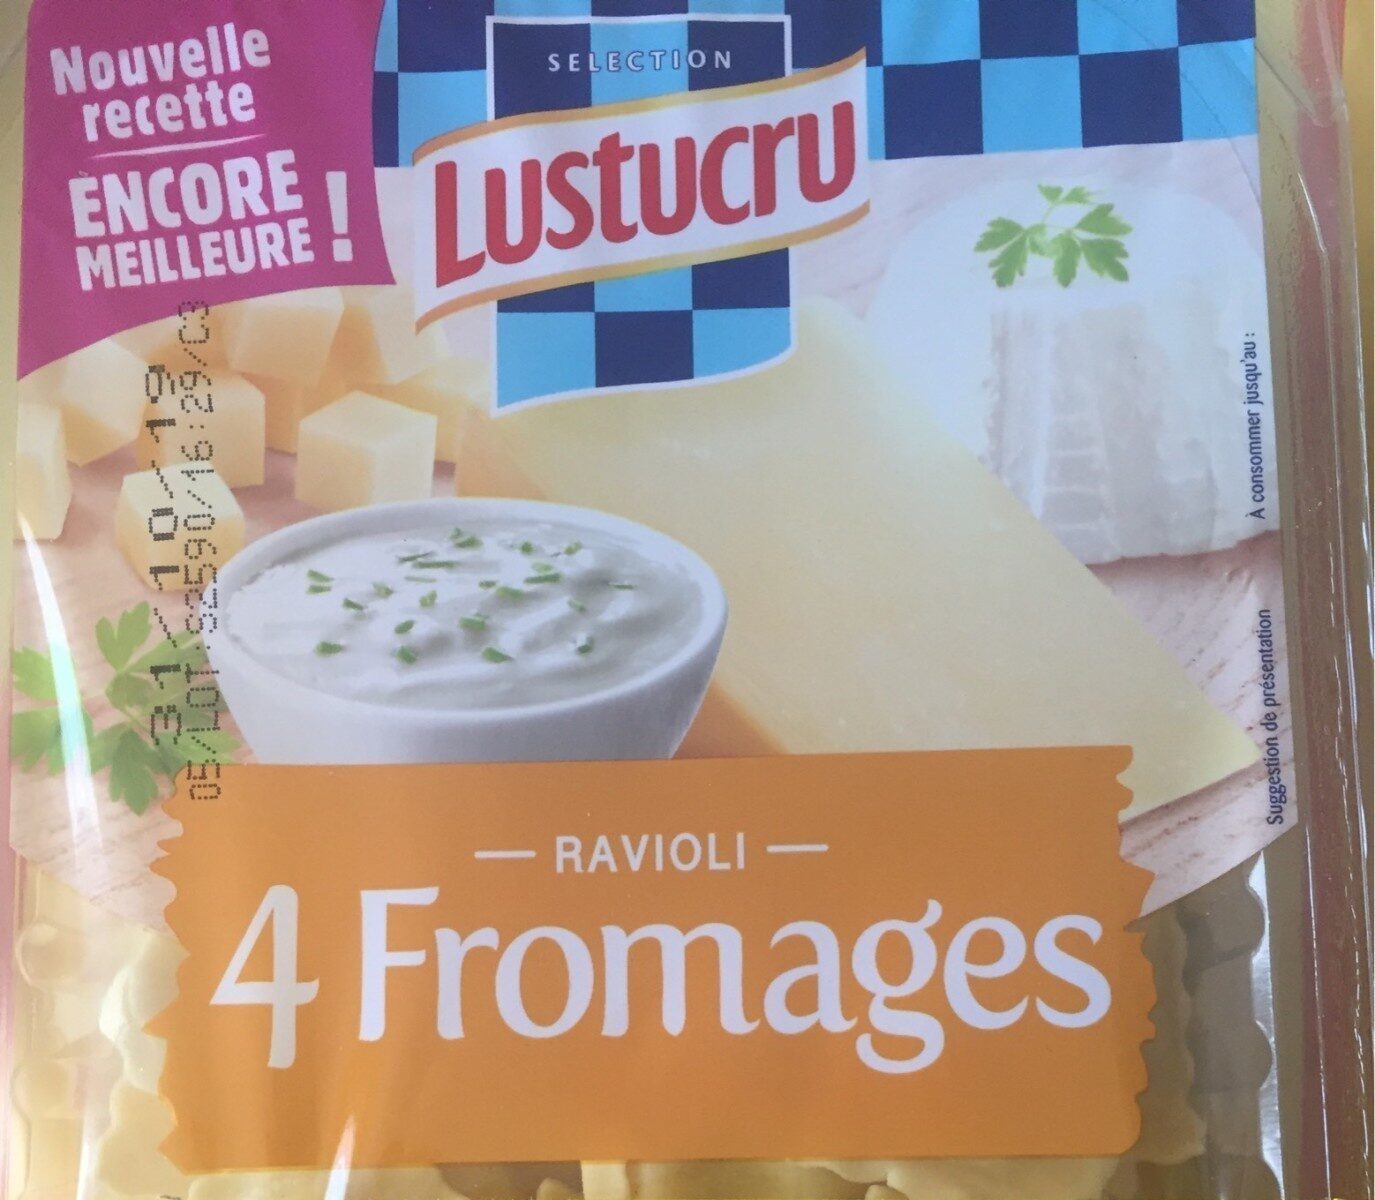 Ravioli 4 fromages - Produkt - fr